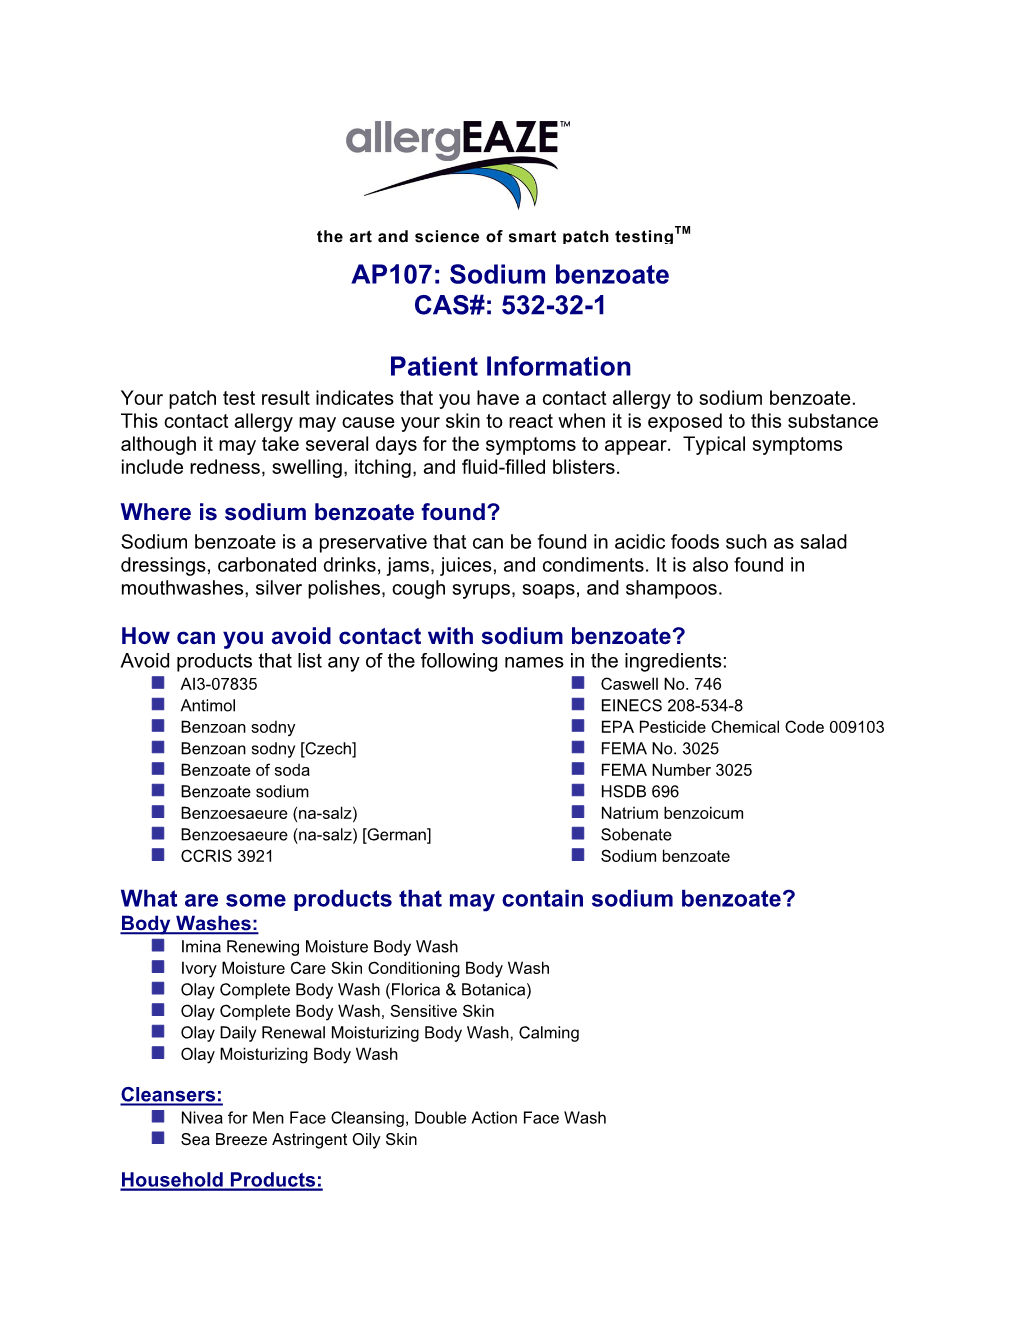 AP107: Sodium Benzoate CAS#: 532-32-1 Patient Information